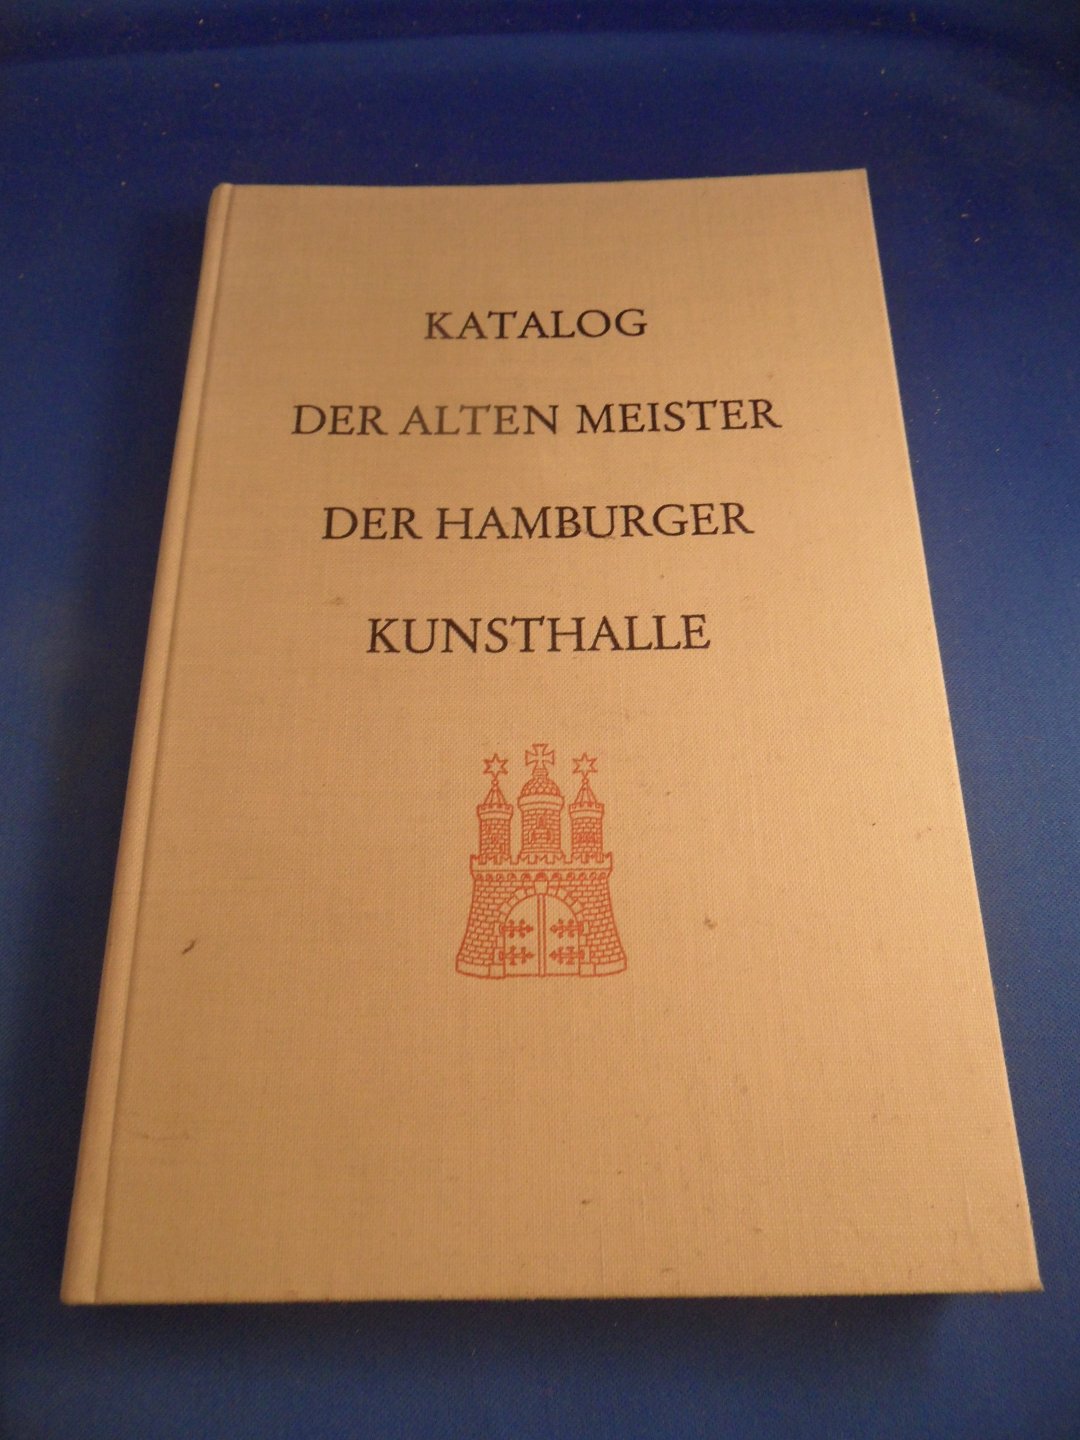  - Katalog der alten Meister der Hamburger Kunsthalle